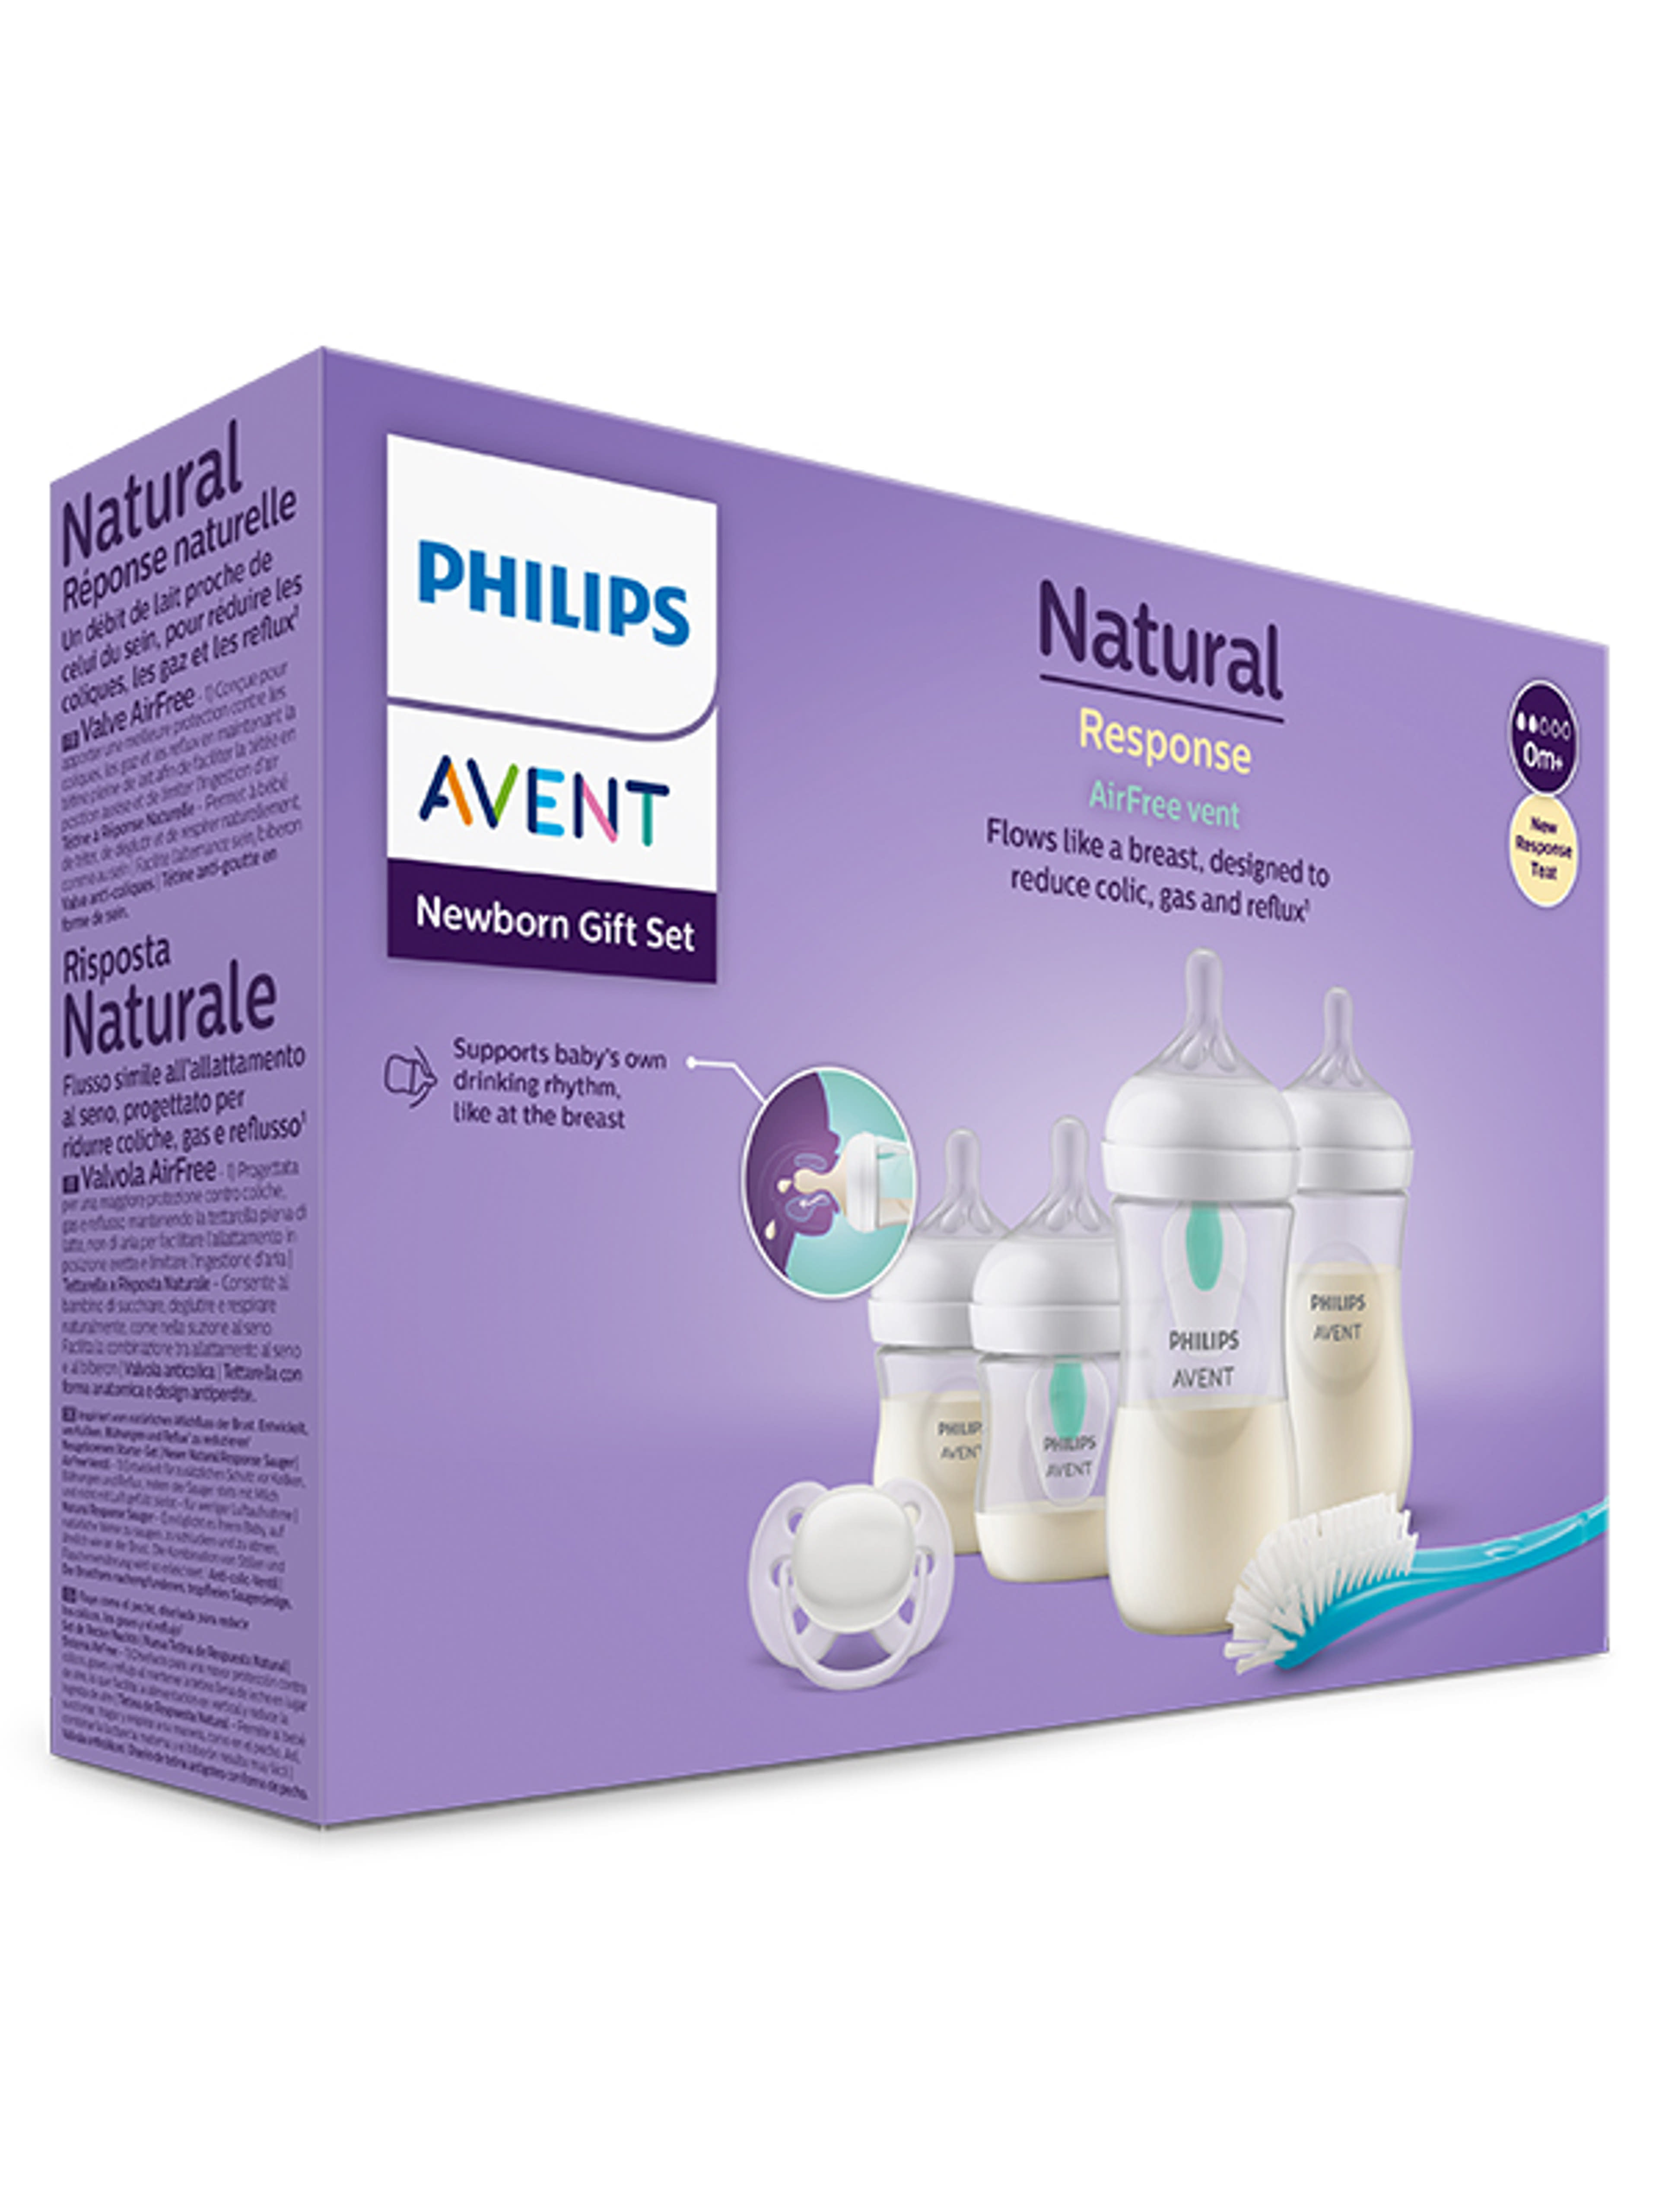 Philips Avent Natural Response cumisüvegcsomag - 1 db-3